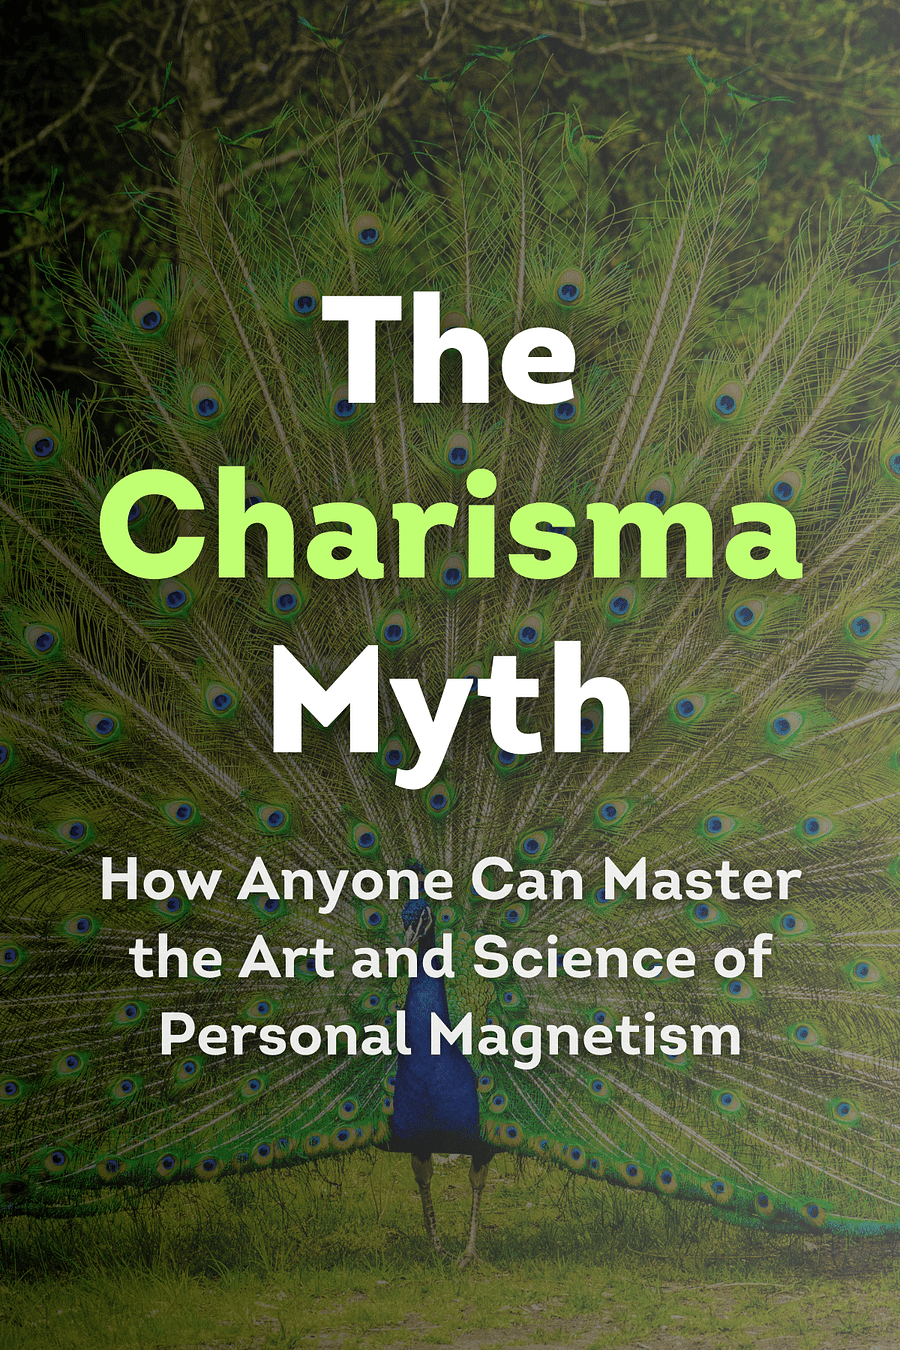 The Charisma Myth by Olivia Fox Cabane - Book Summary